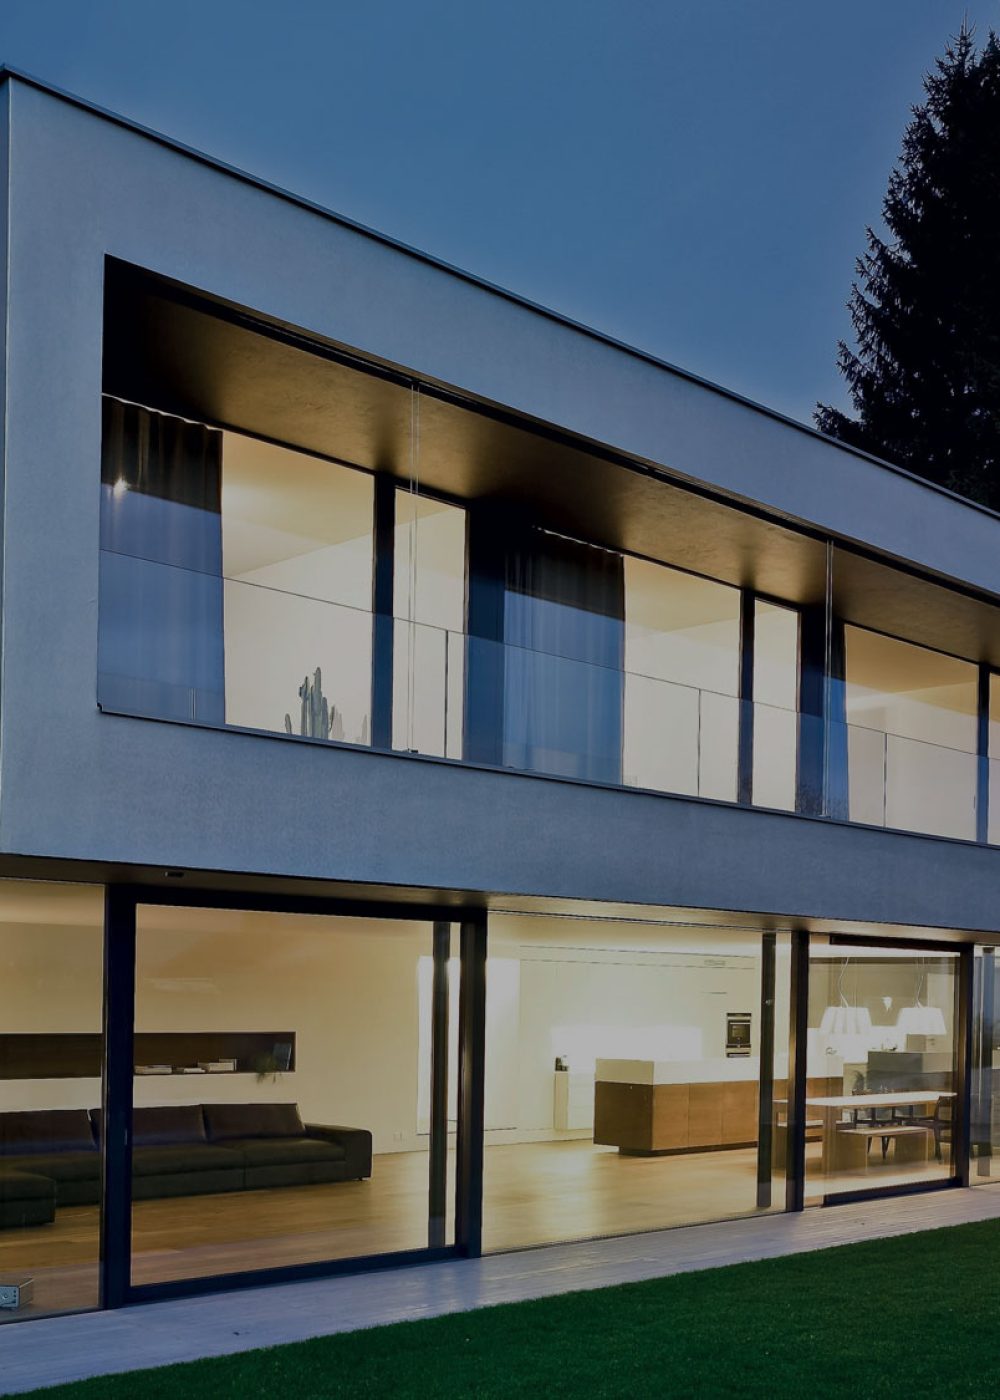 Imagen de una vivienda moderna con carpintería de aluminio y amplios ventanales